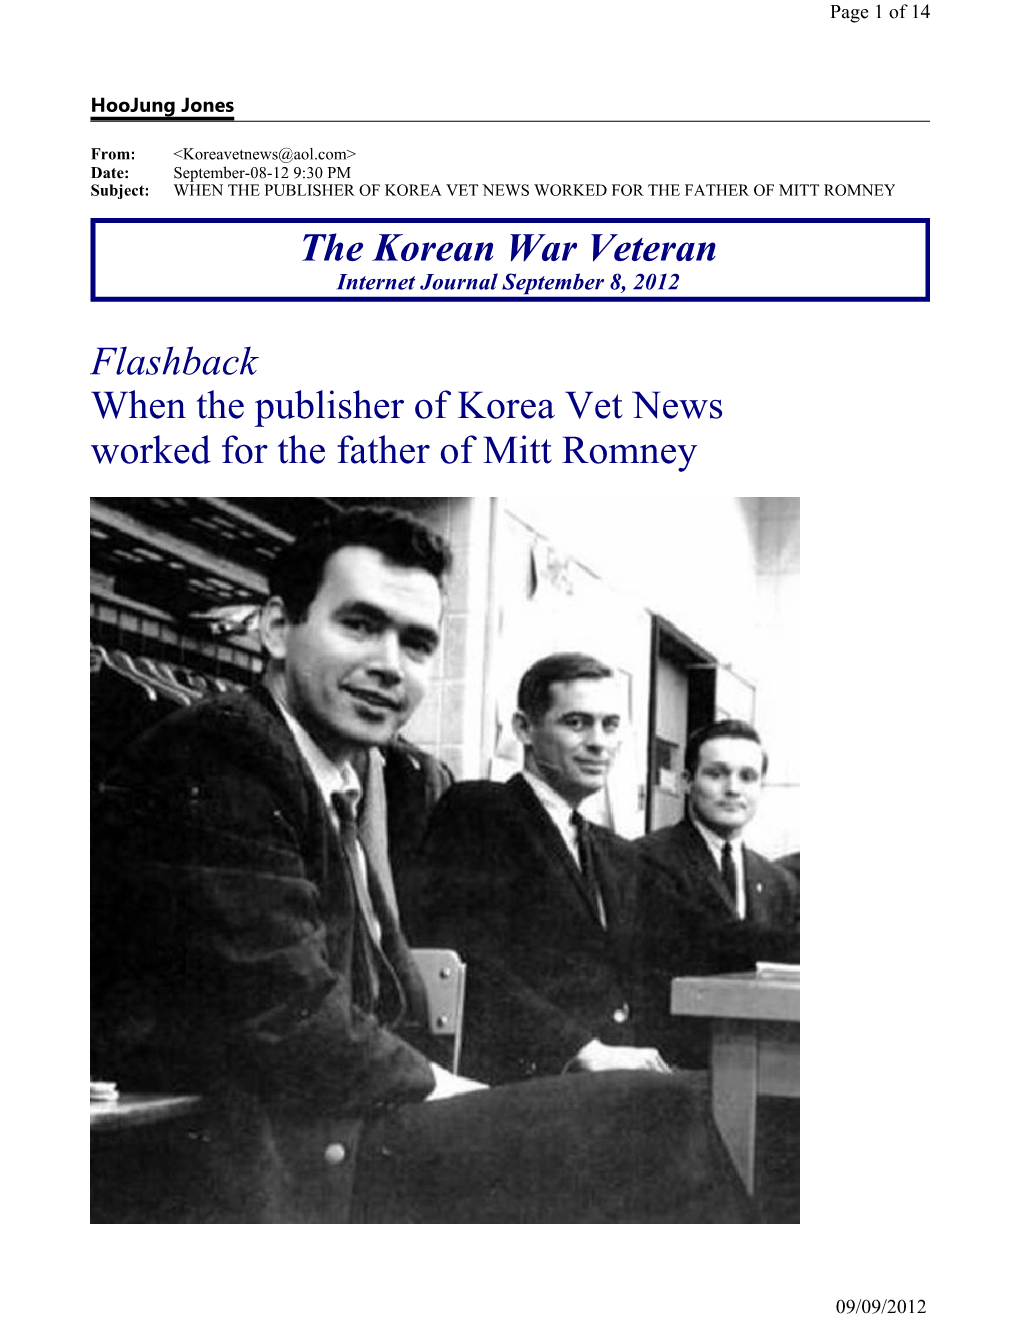 The Korean War Veteran Flashback When the Publisher of Korea Vet